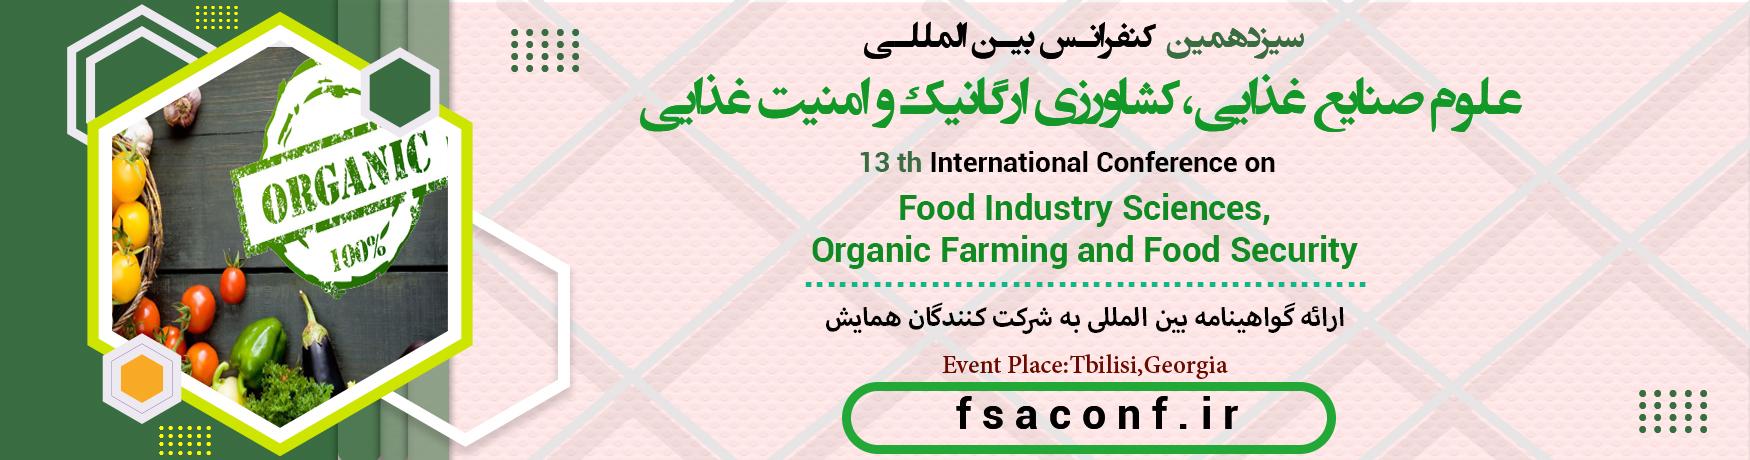 کنفرانس بین المللی علوم صنایع غذایی،کشاورزی ارگانیک و امنیت غذایی	